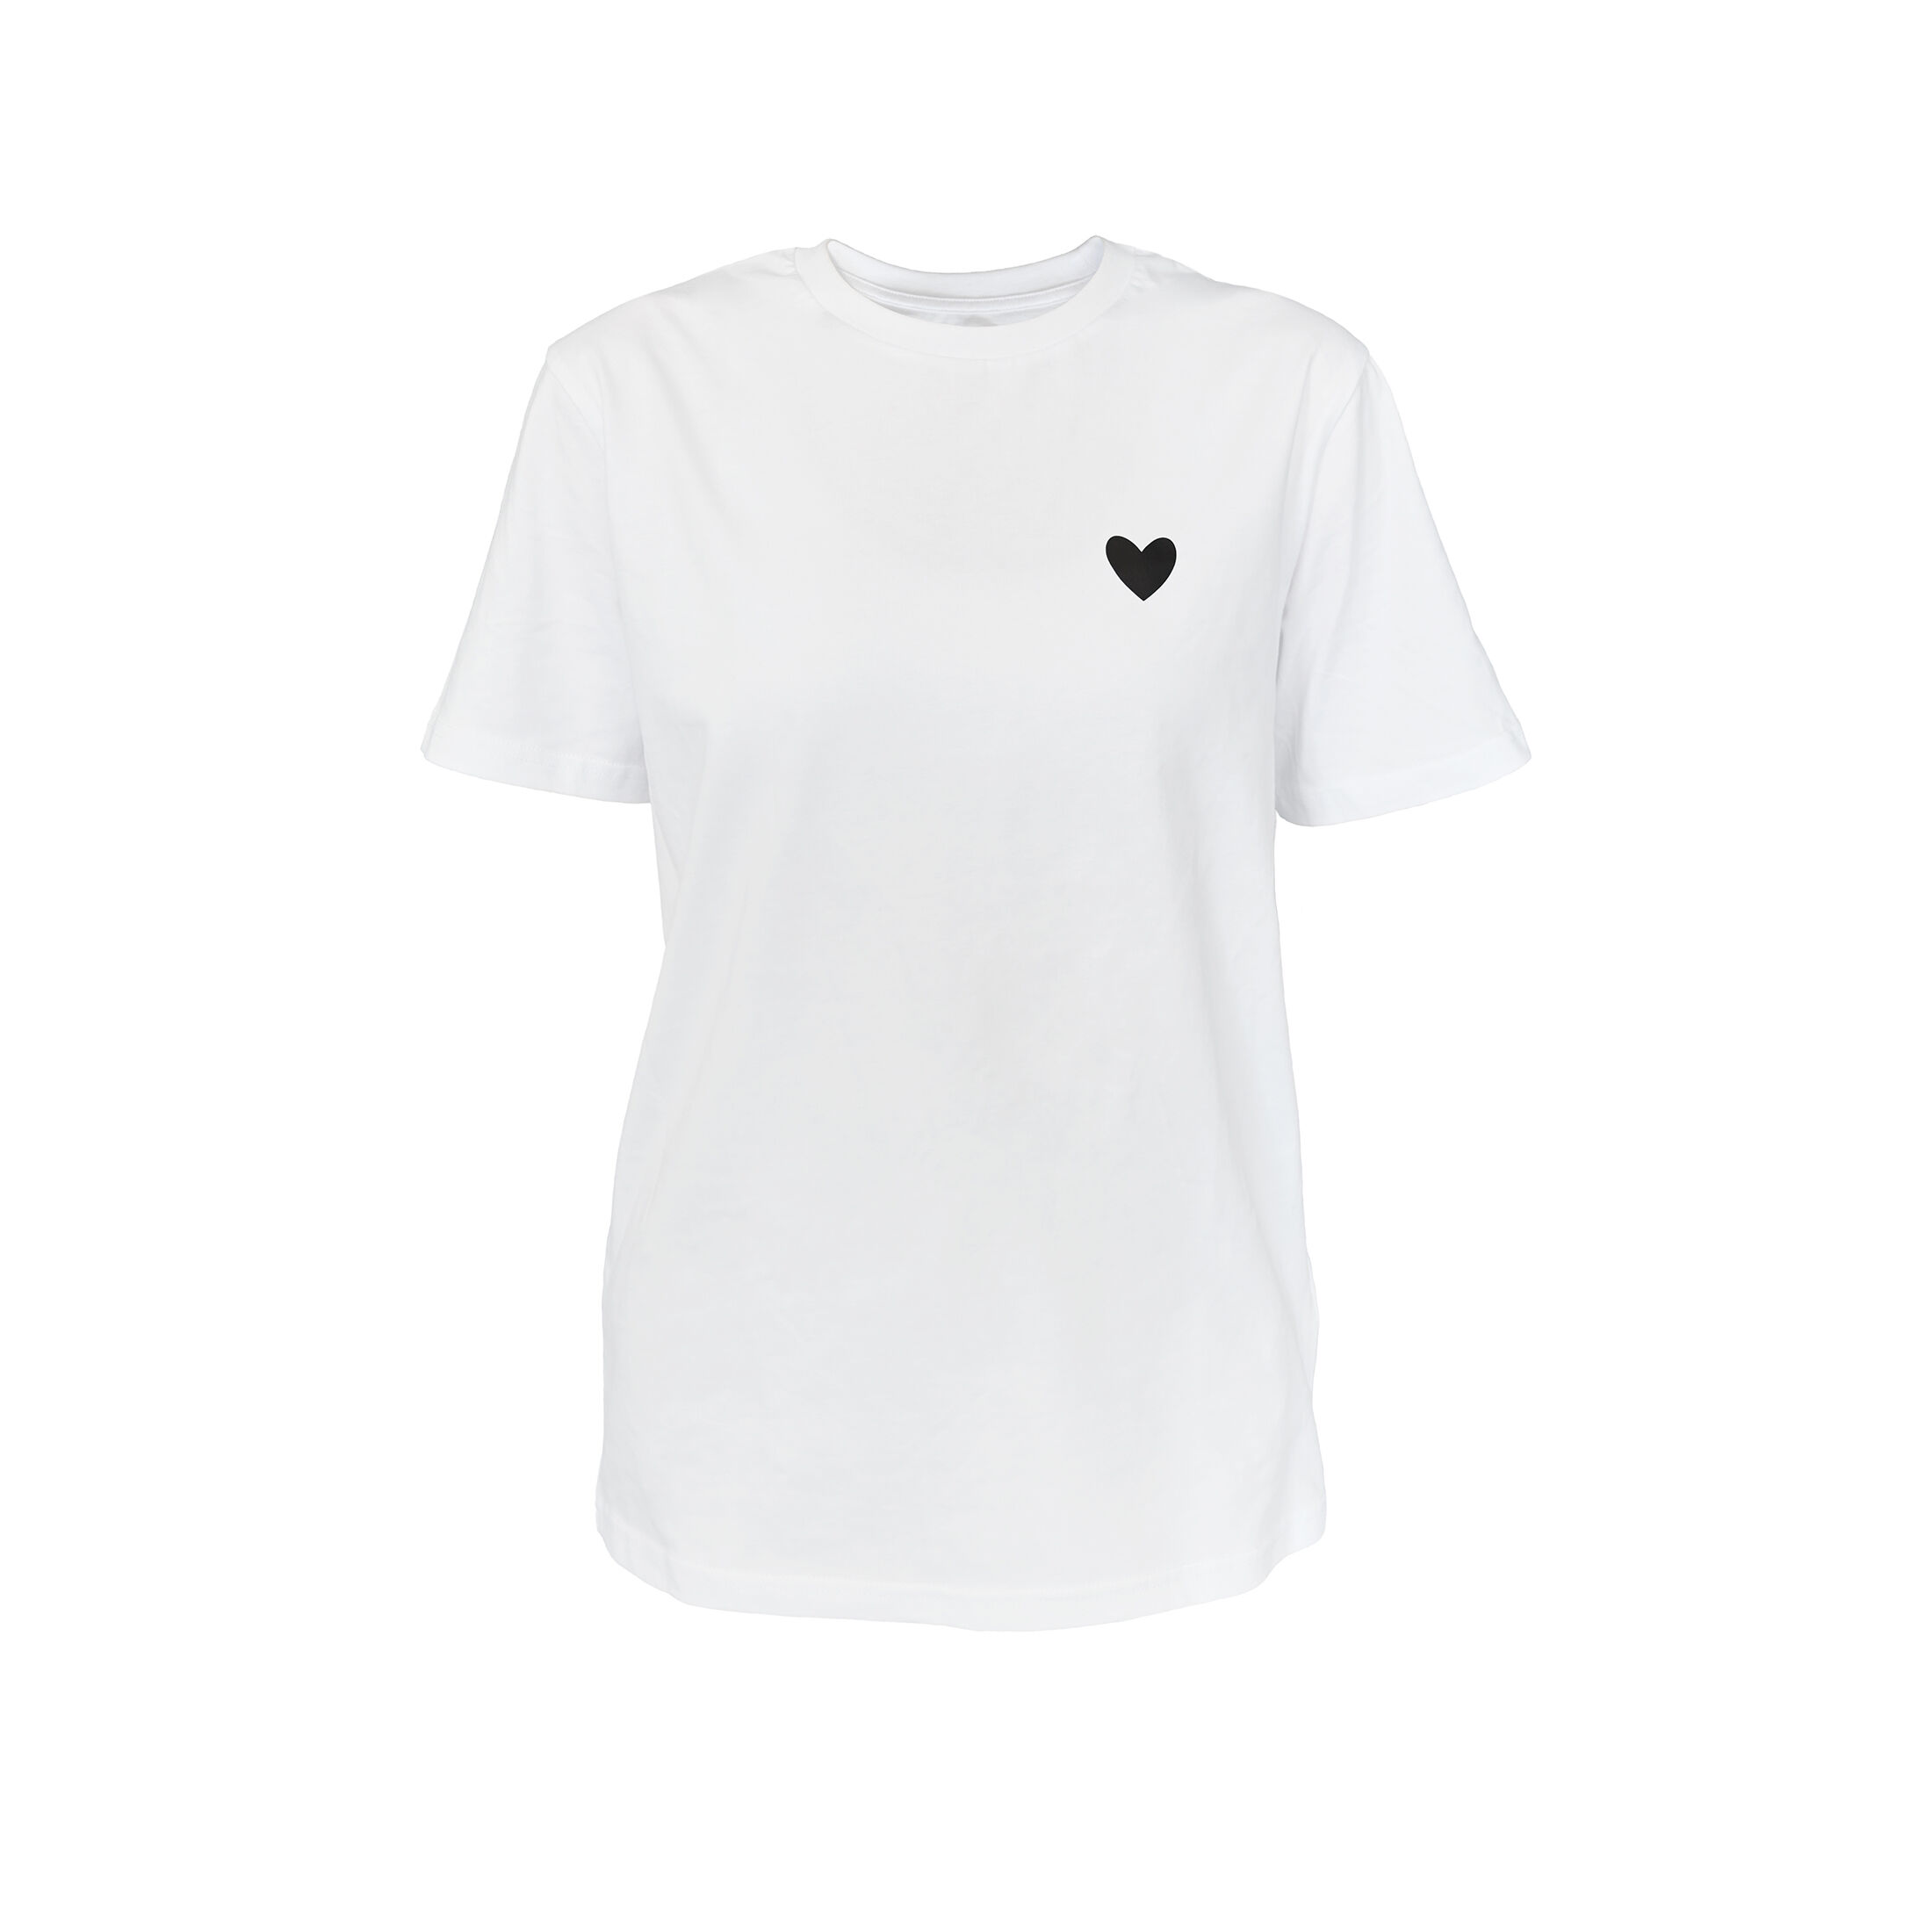 T-Shirt für Schwarz JODIE Herz CRICKIT T-Shirt Weiss kaufen Damen jetzt